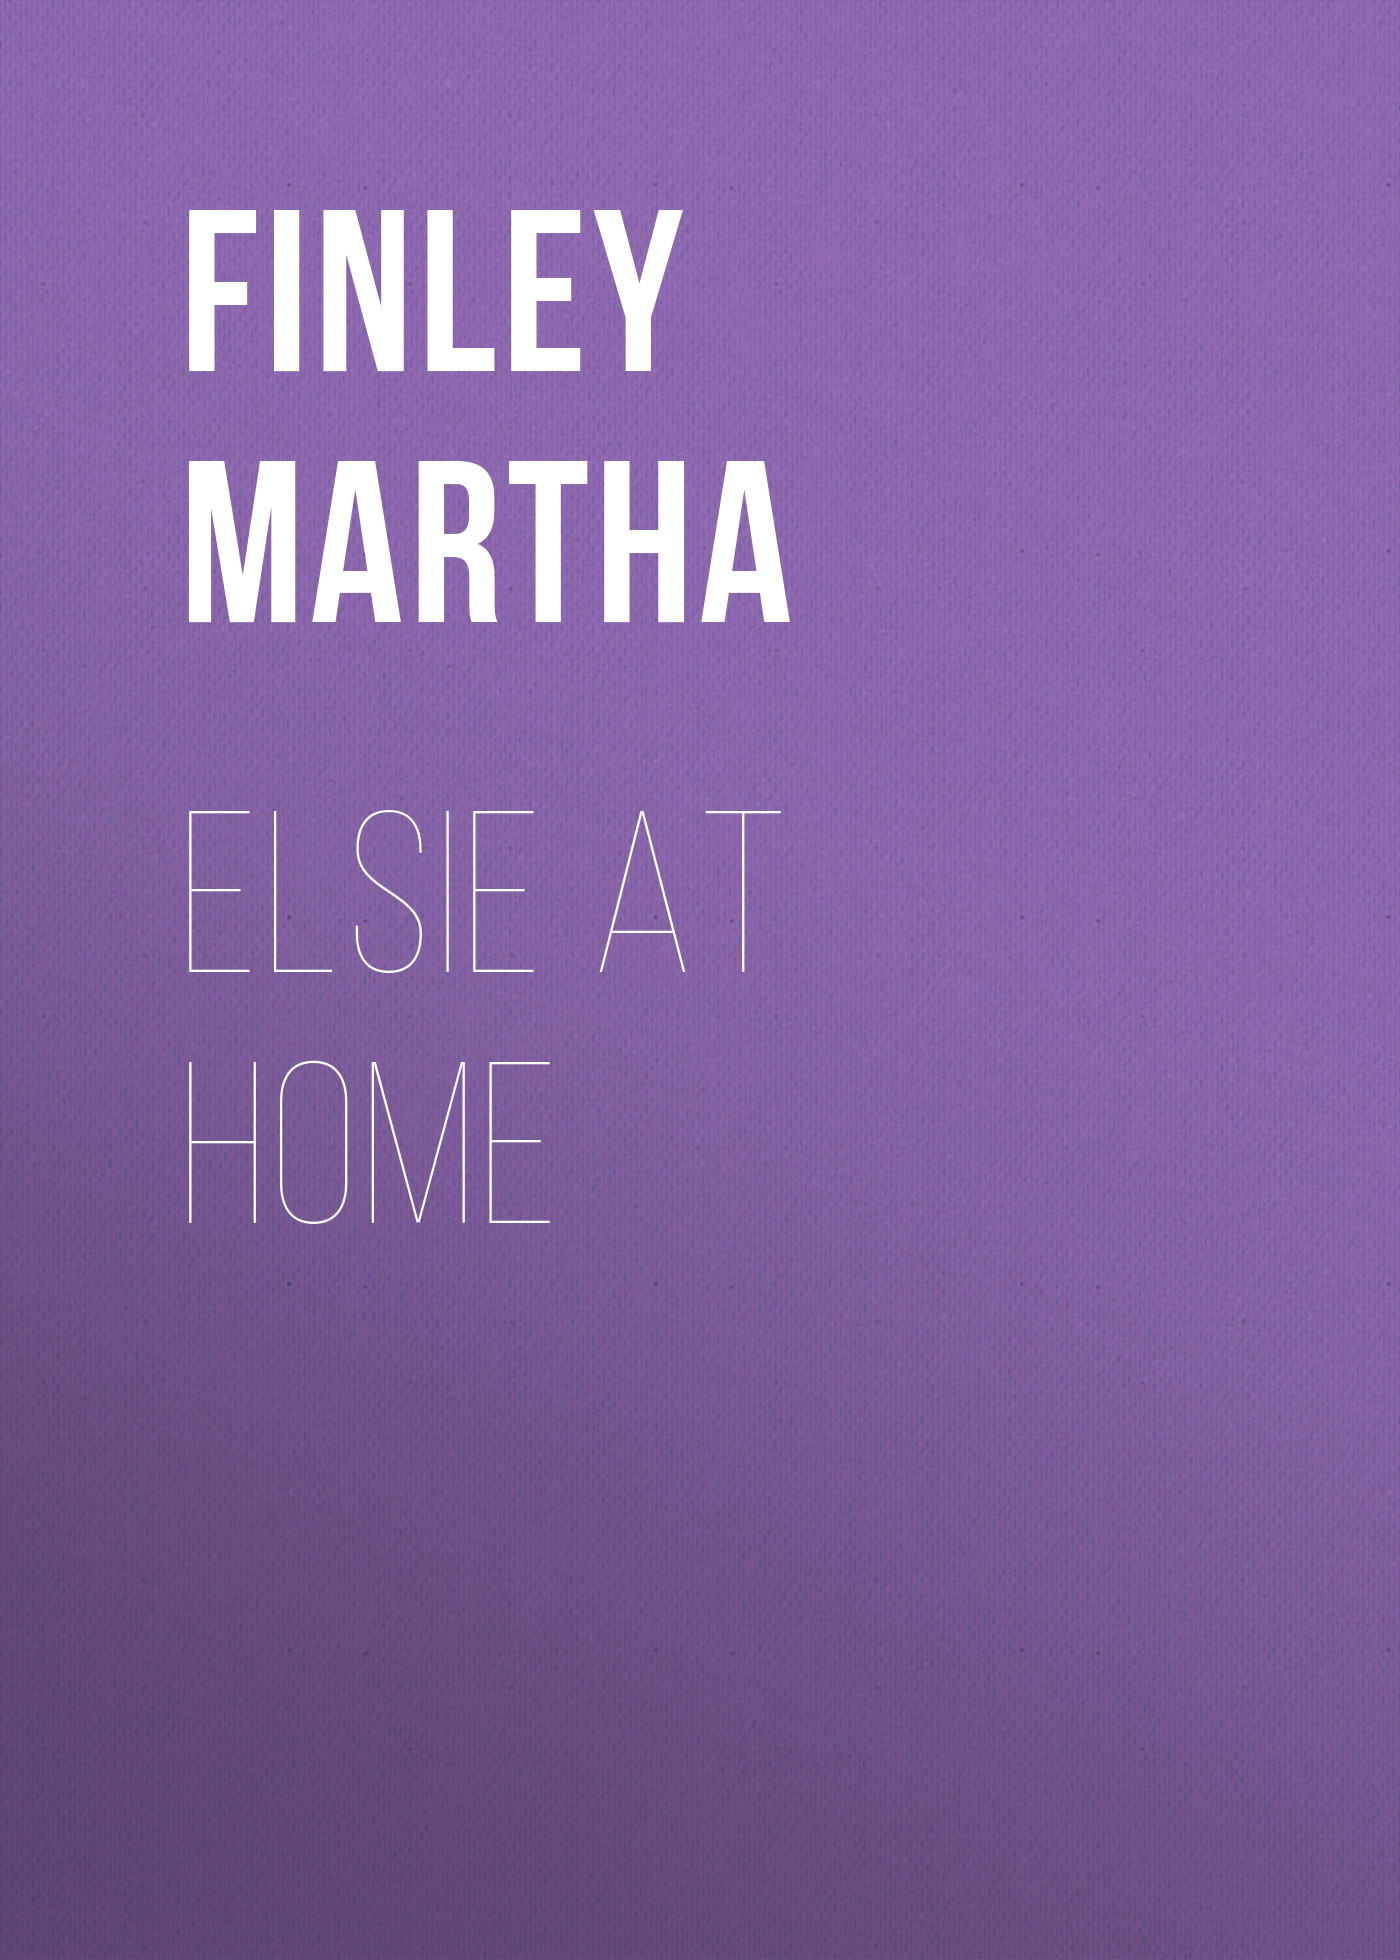 Книга Elsie at Home из серии , созданная Martha Finley, может относится к жанру Зарубежная старинная литература, Зарубежная классика. Стоимость электронной книги Elsie at Home с идентификатором 25202431 составляет 0 руб.